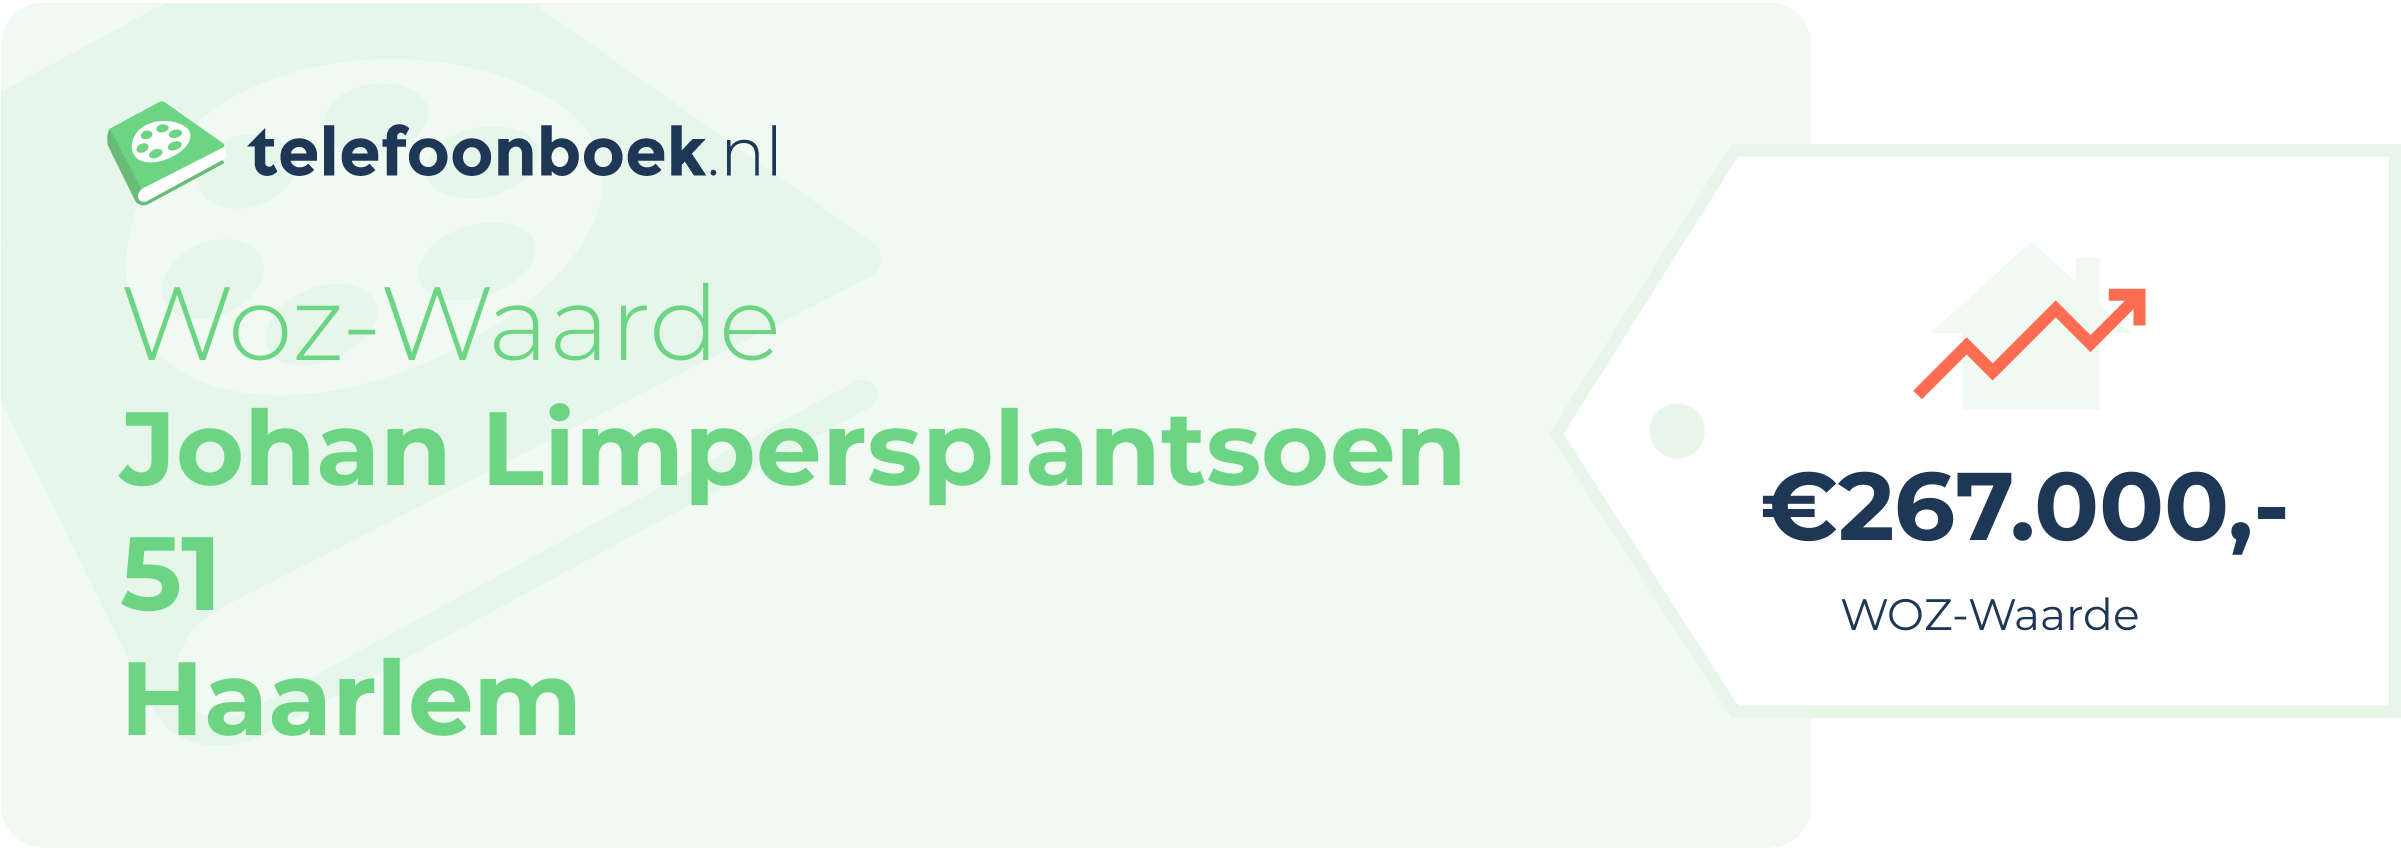 WOZ-waarde Johan Limpersplantsoen 51 Haarlem